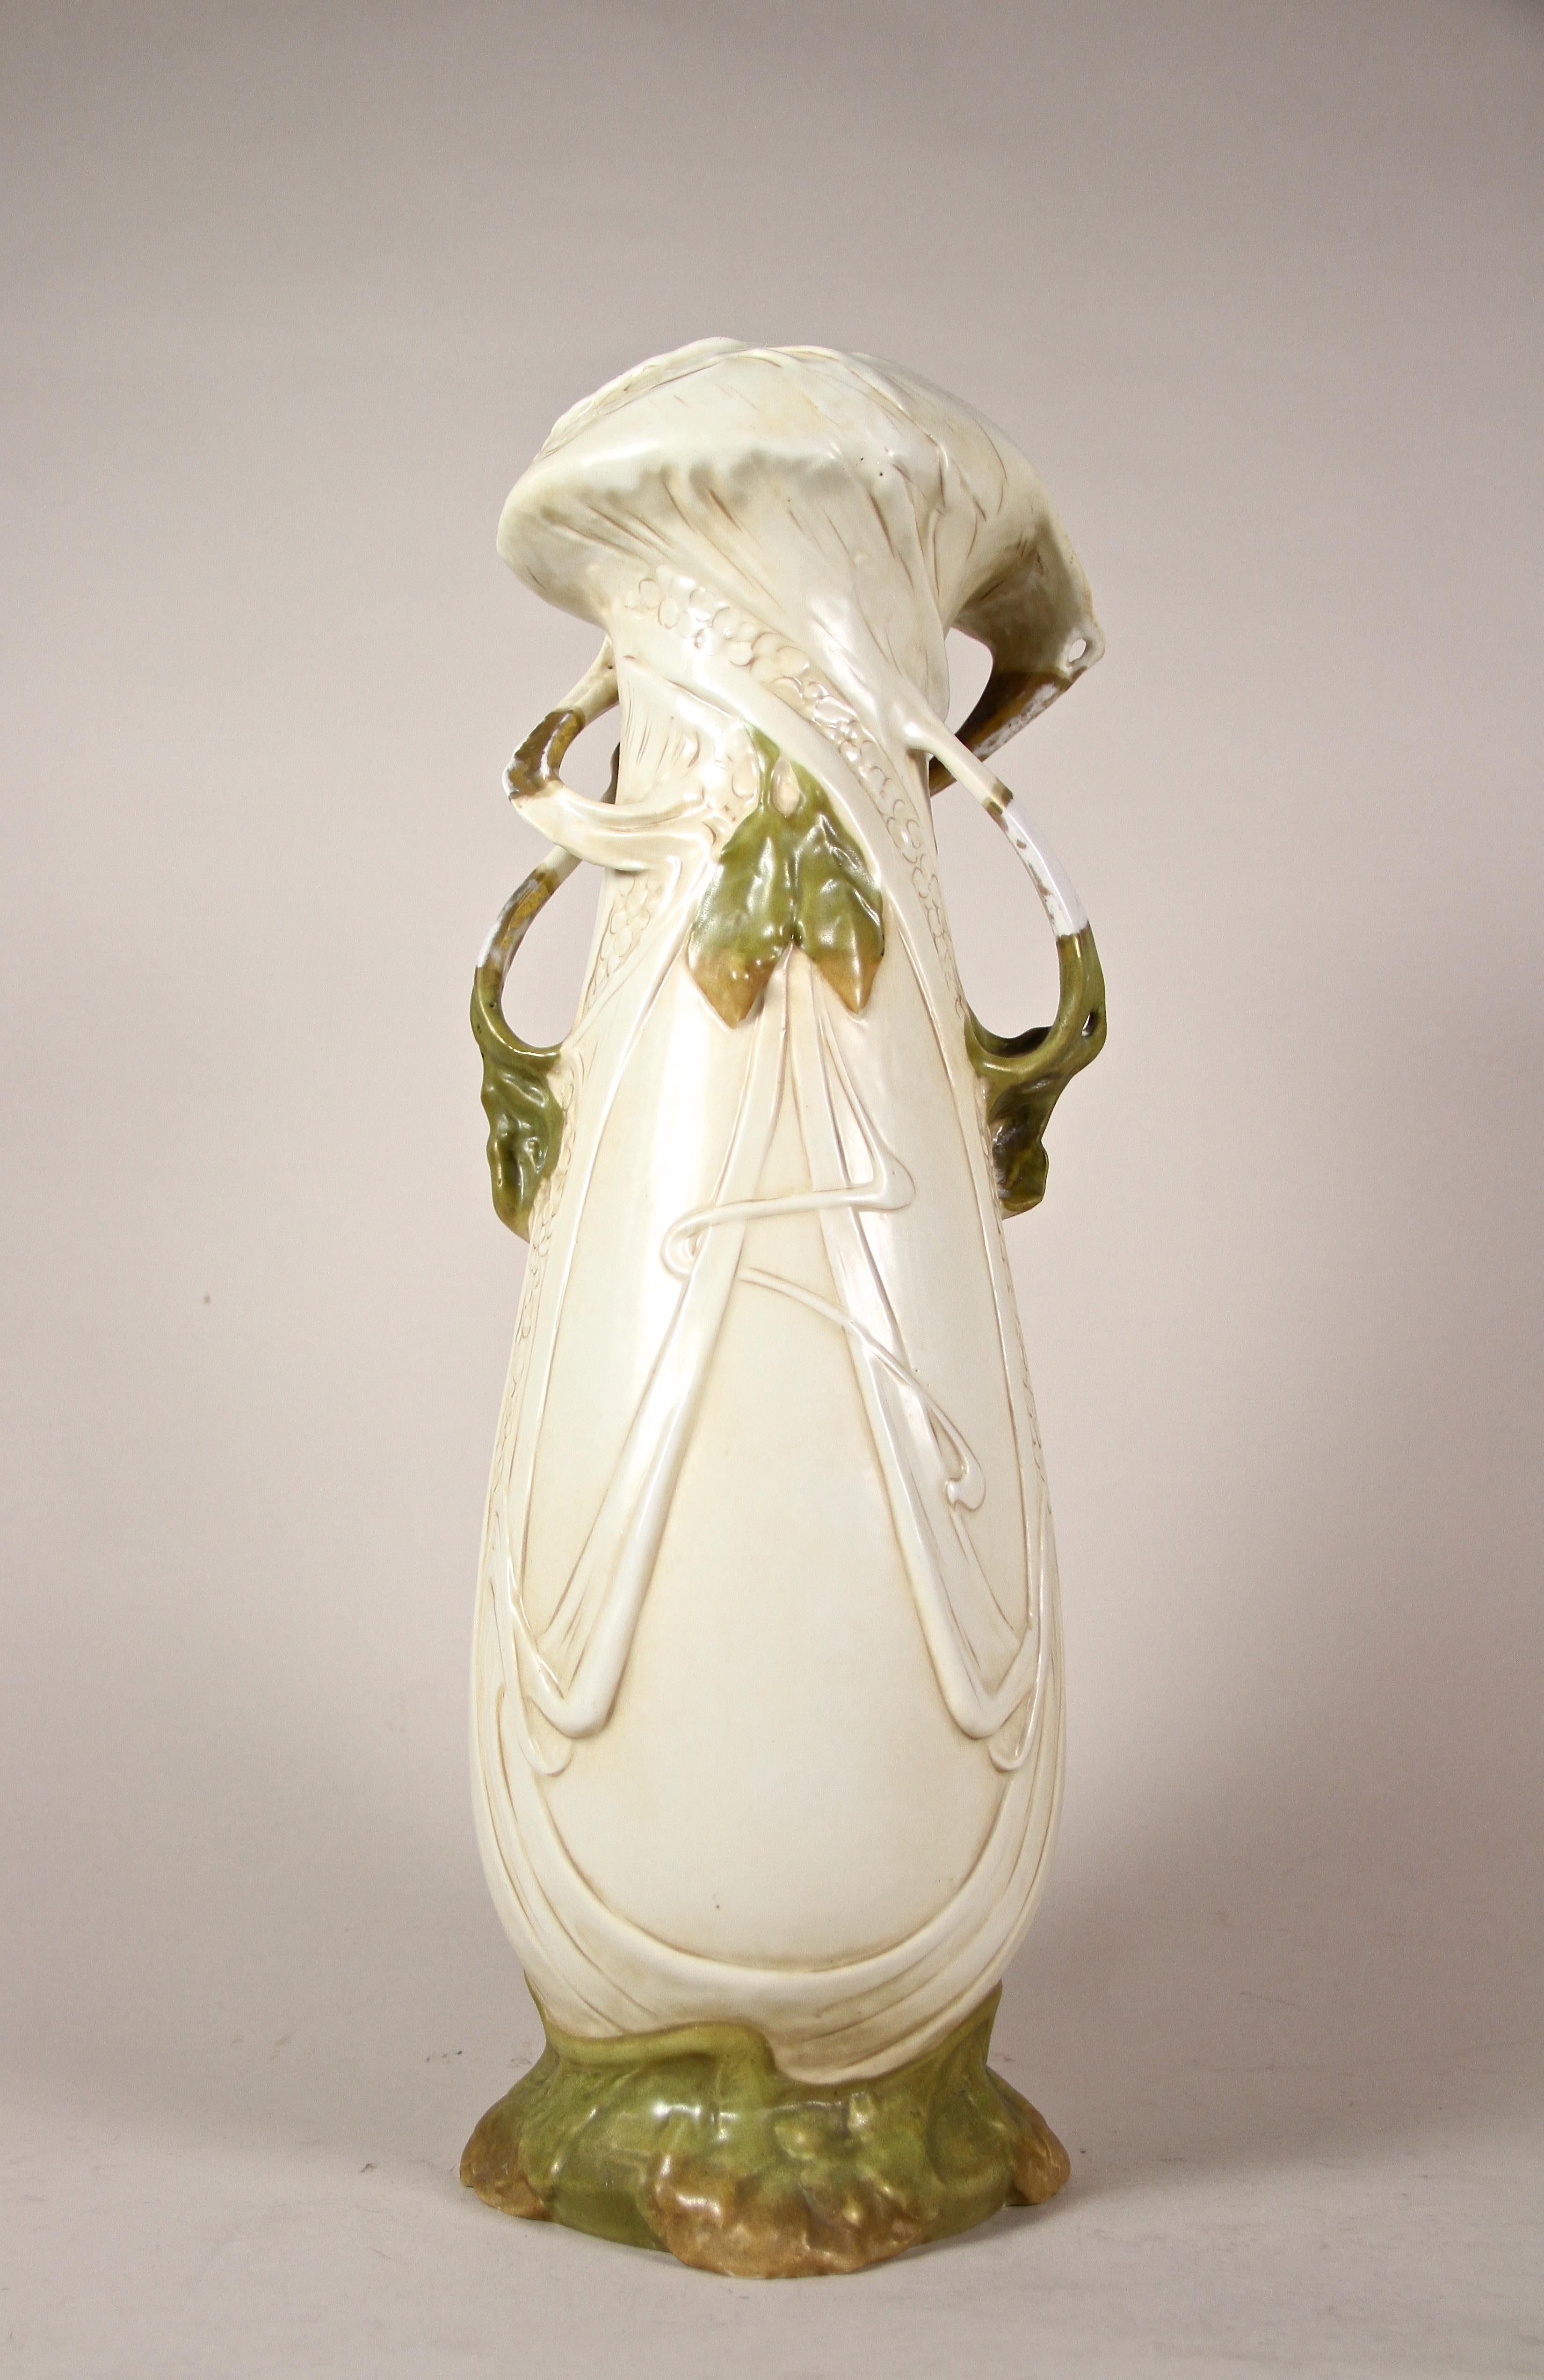 Czech Art Nouveau Porcelain Vase with Olives by Royal Dux, Bohemia, circa 1900